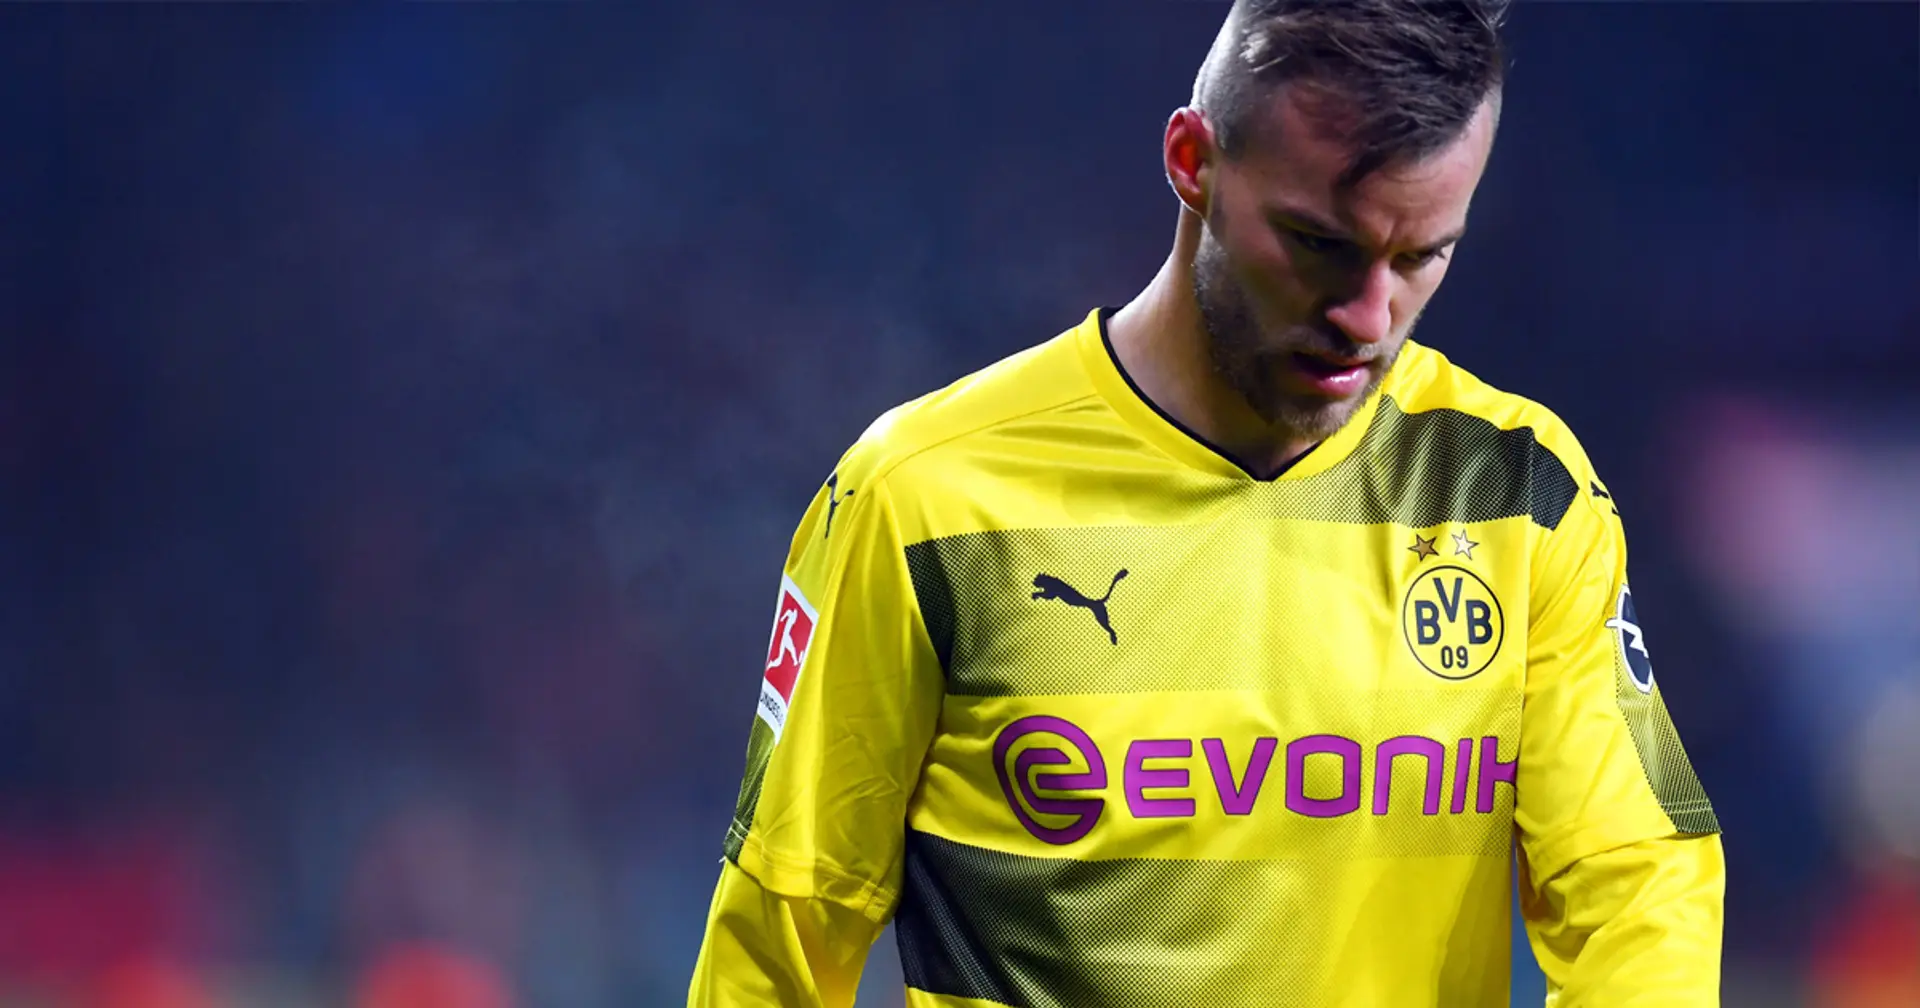 Corona schlägt wieder: Ex-Dortmunder Jarmolenko vor dem Spiel gegen Deutschland positiv getestet